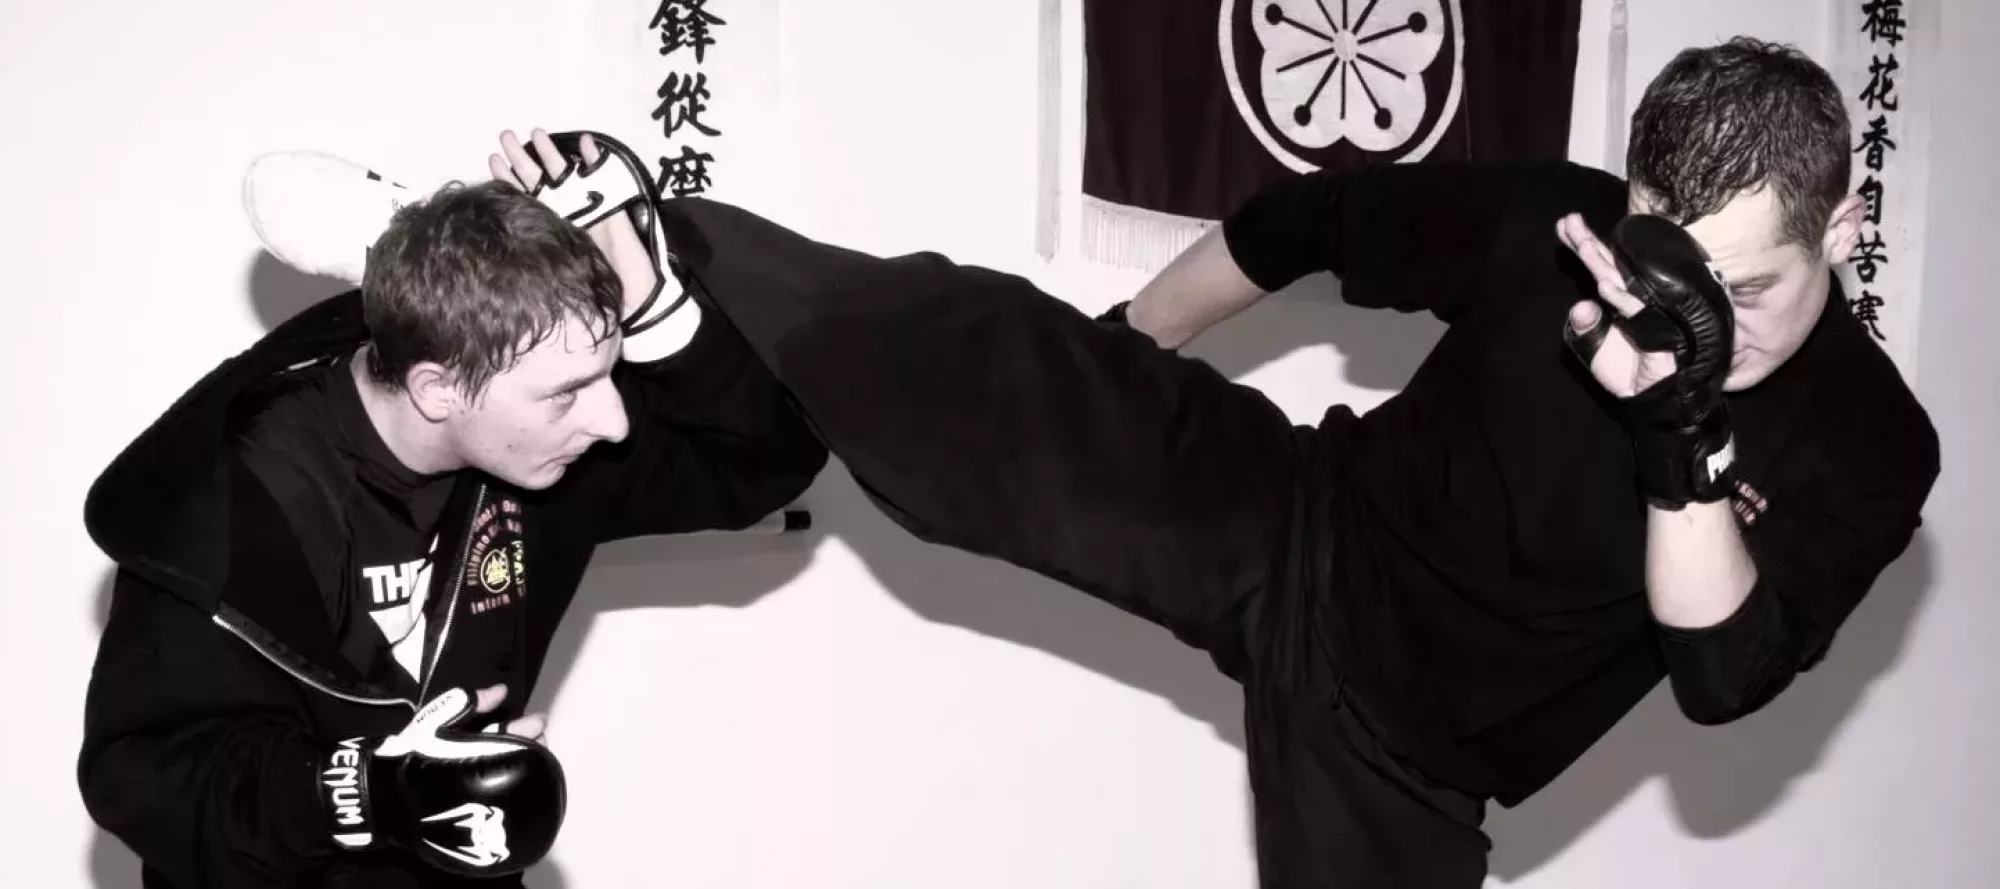 Jeet Kune do / Jun fan Kung Fu